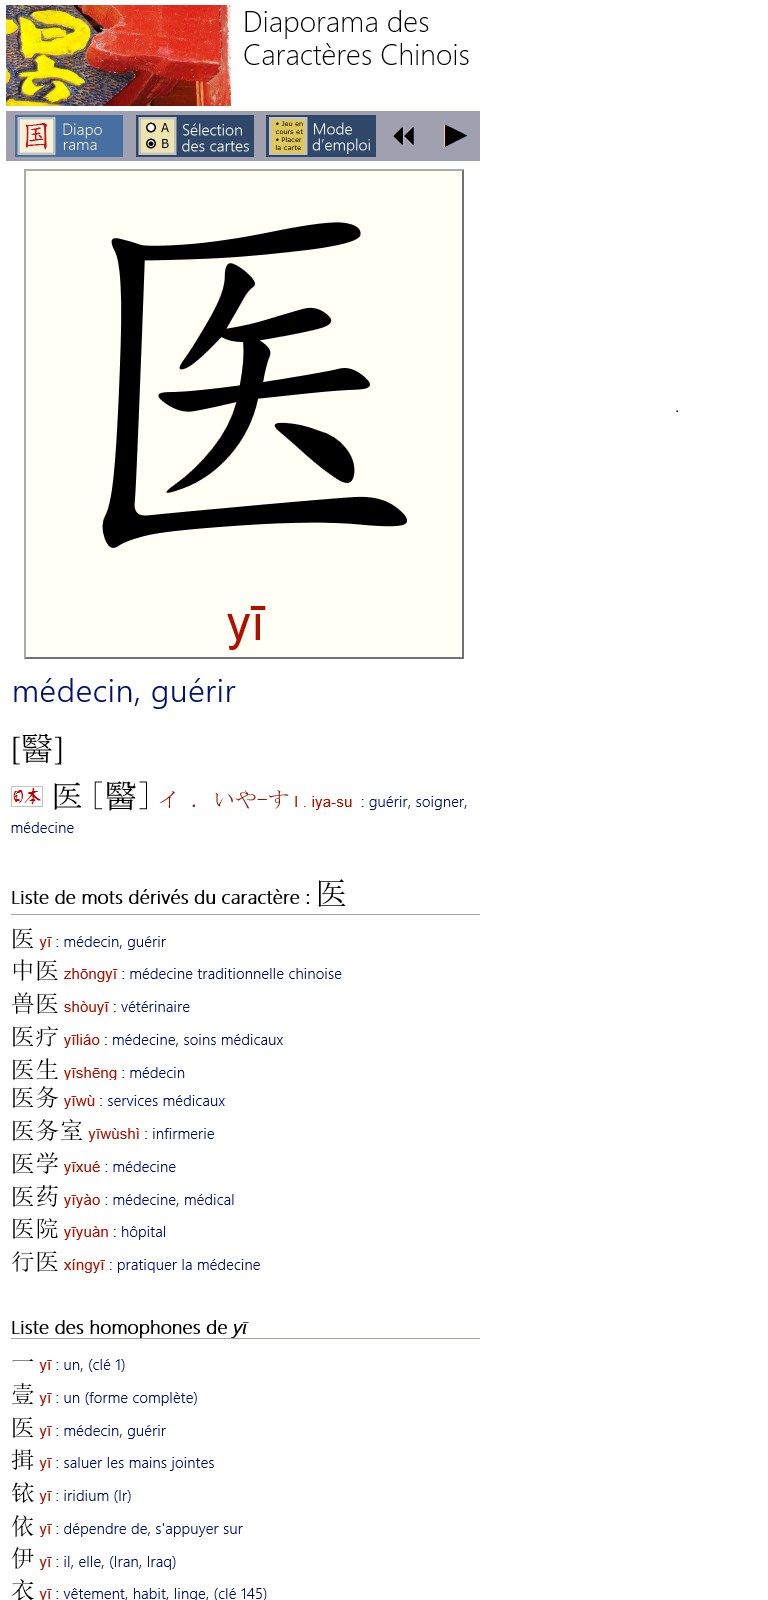 Carte d'un caractère chinois accompagné de sa fiche complète